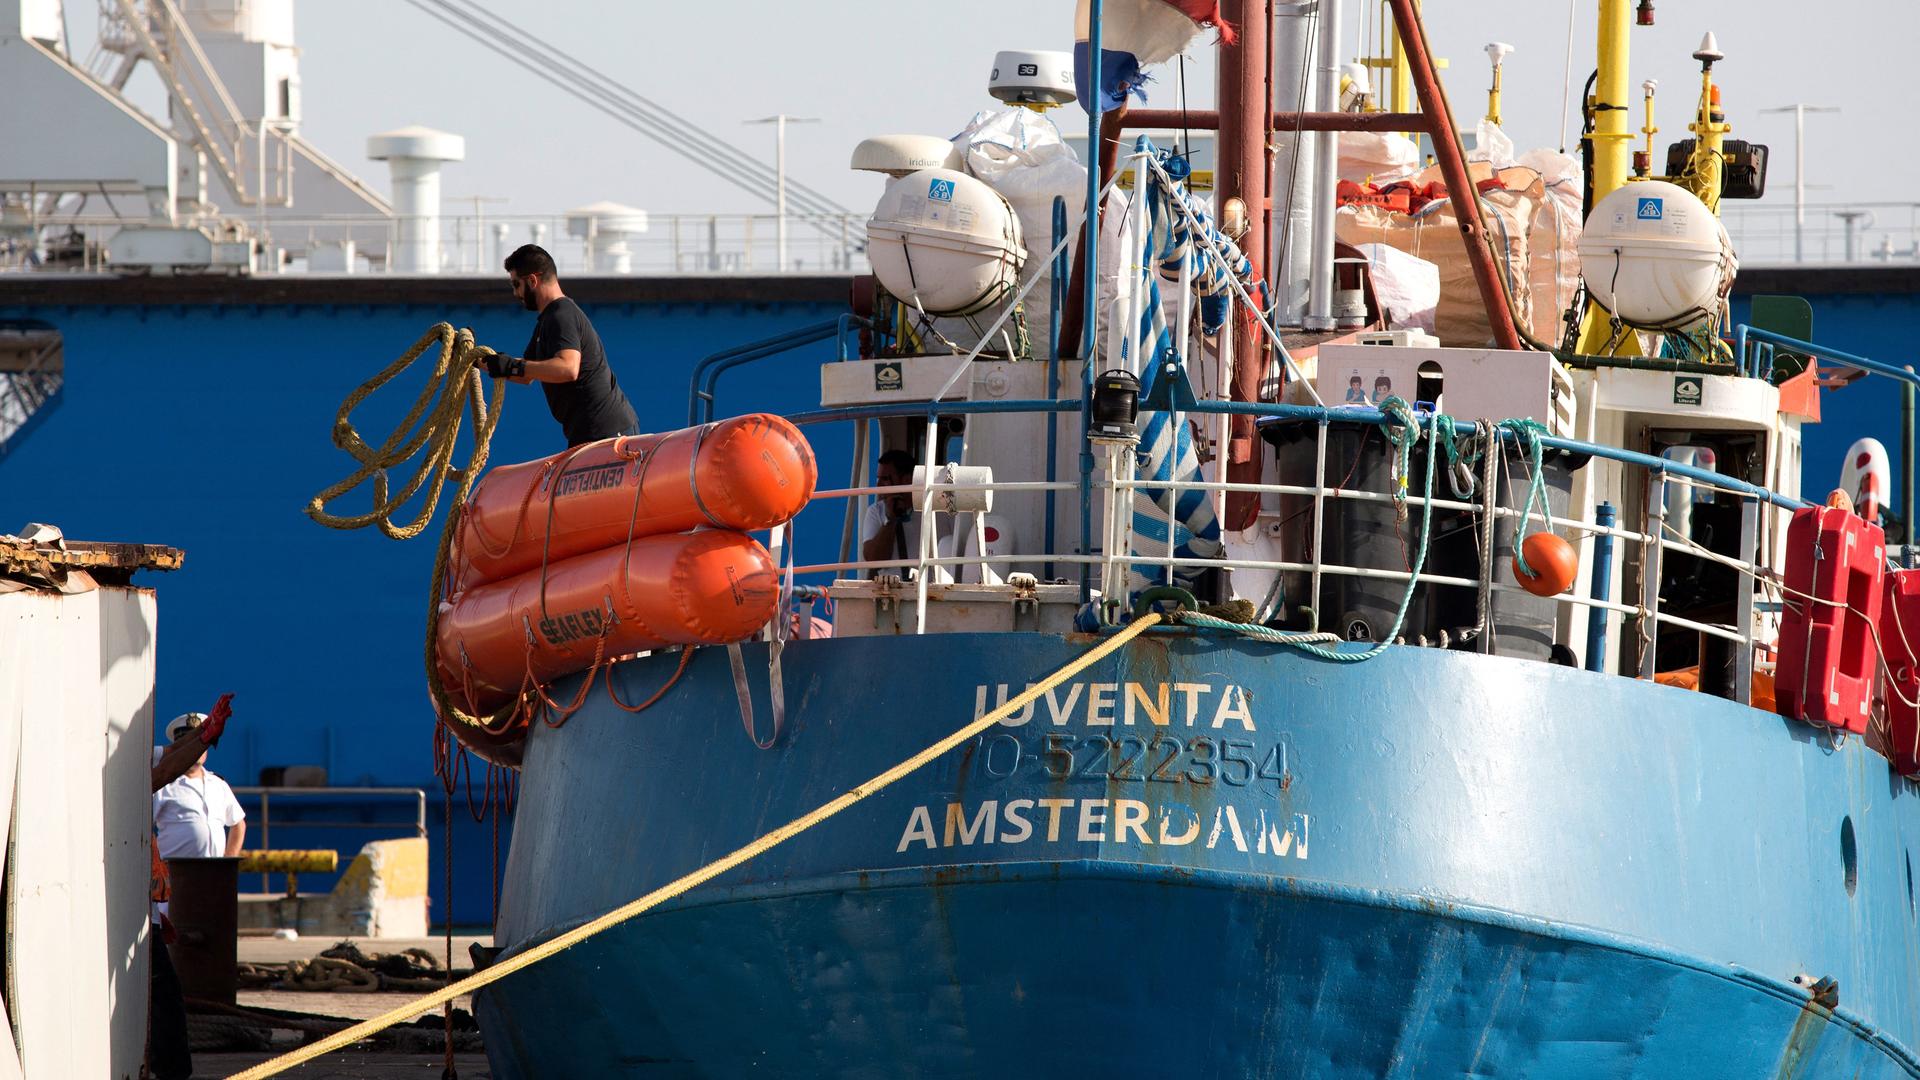 Ein Schiff mit dem Namen Iuventa liegt im Hafen.